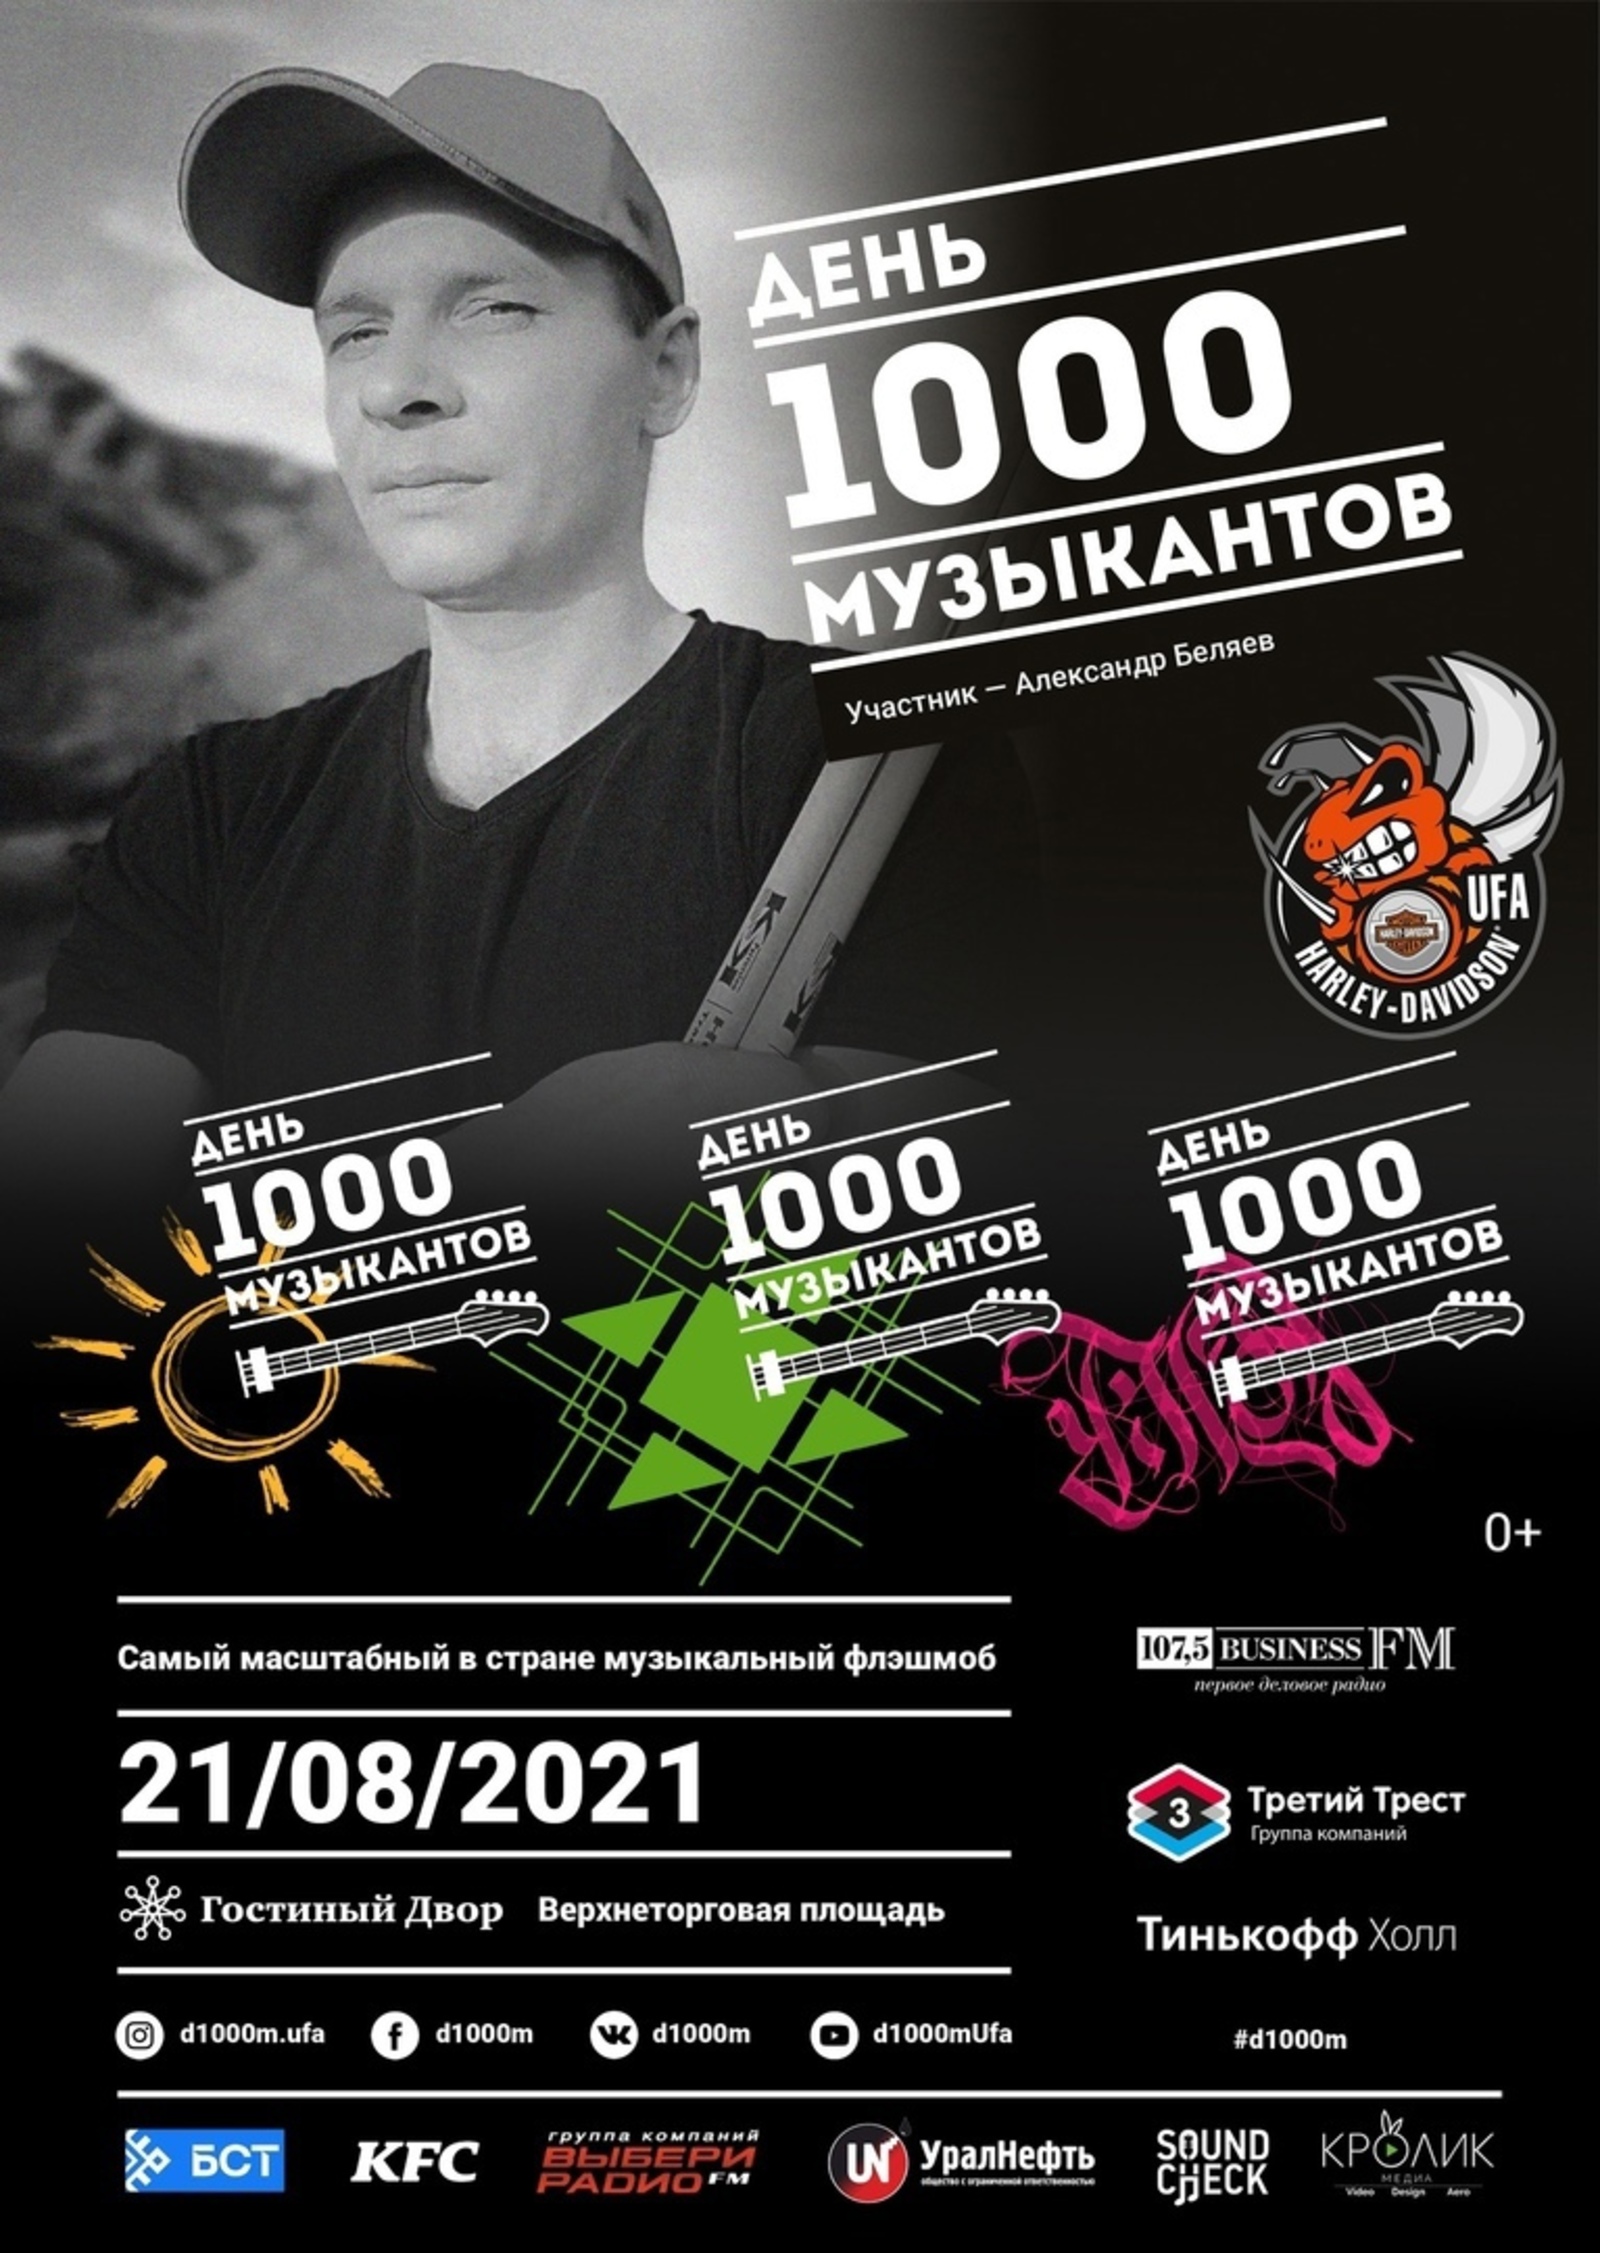 В Уфе пройдет грандиозный музыкальный фестиваль  День 1000 музыкантов